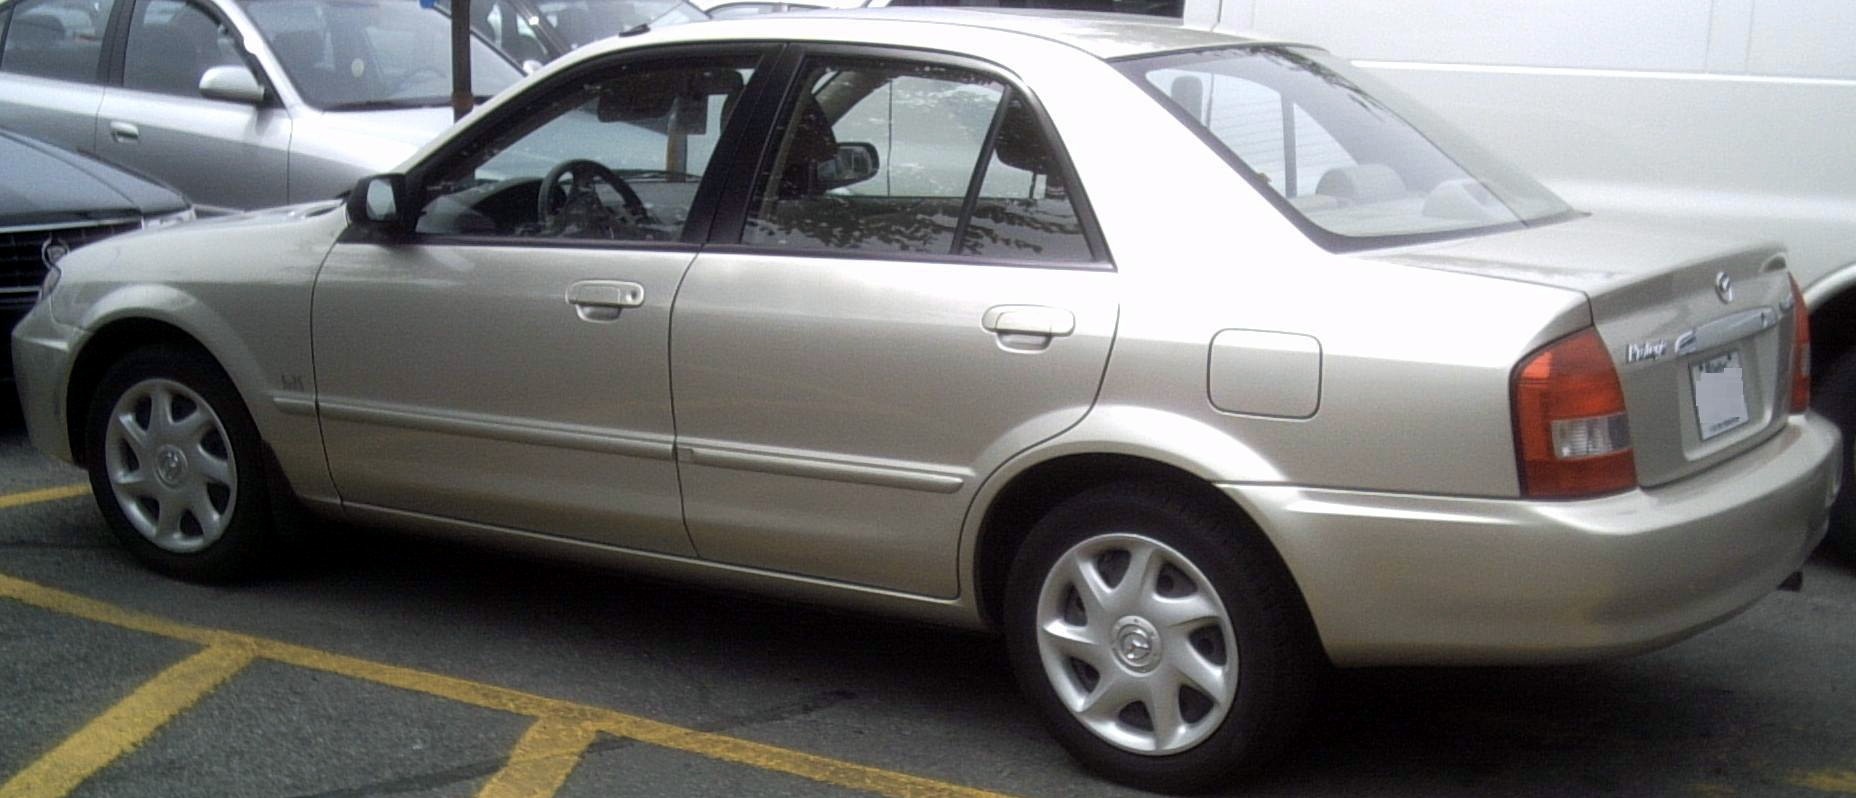 File:'02 Mazda Protegé Sedan -- Rear.jpg - Wikimedia Commons